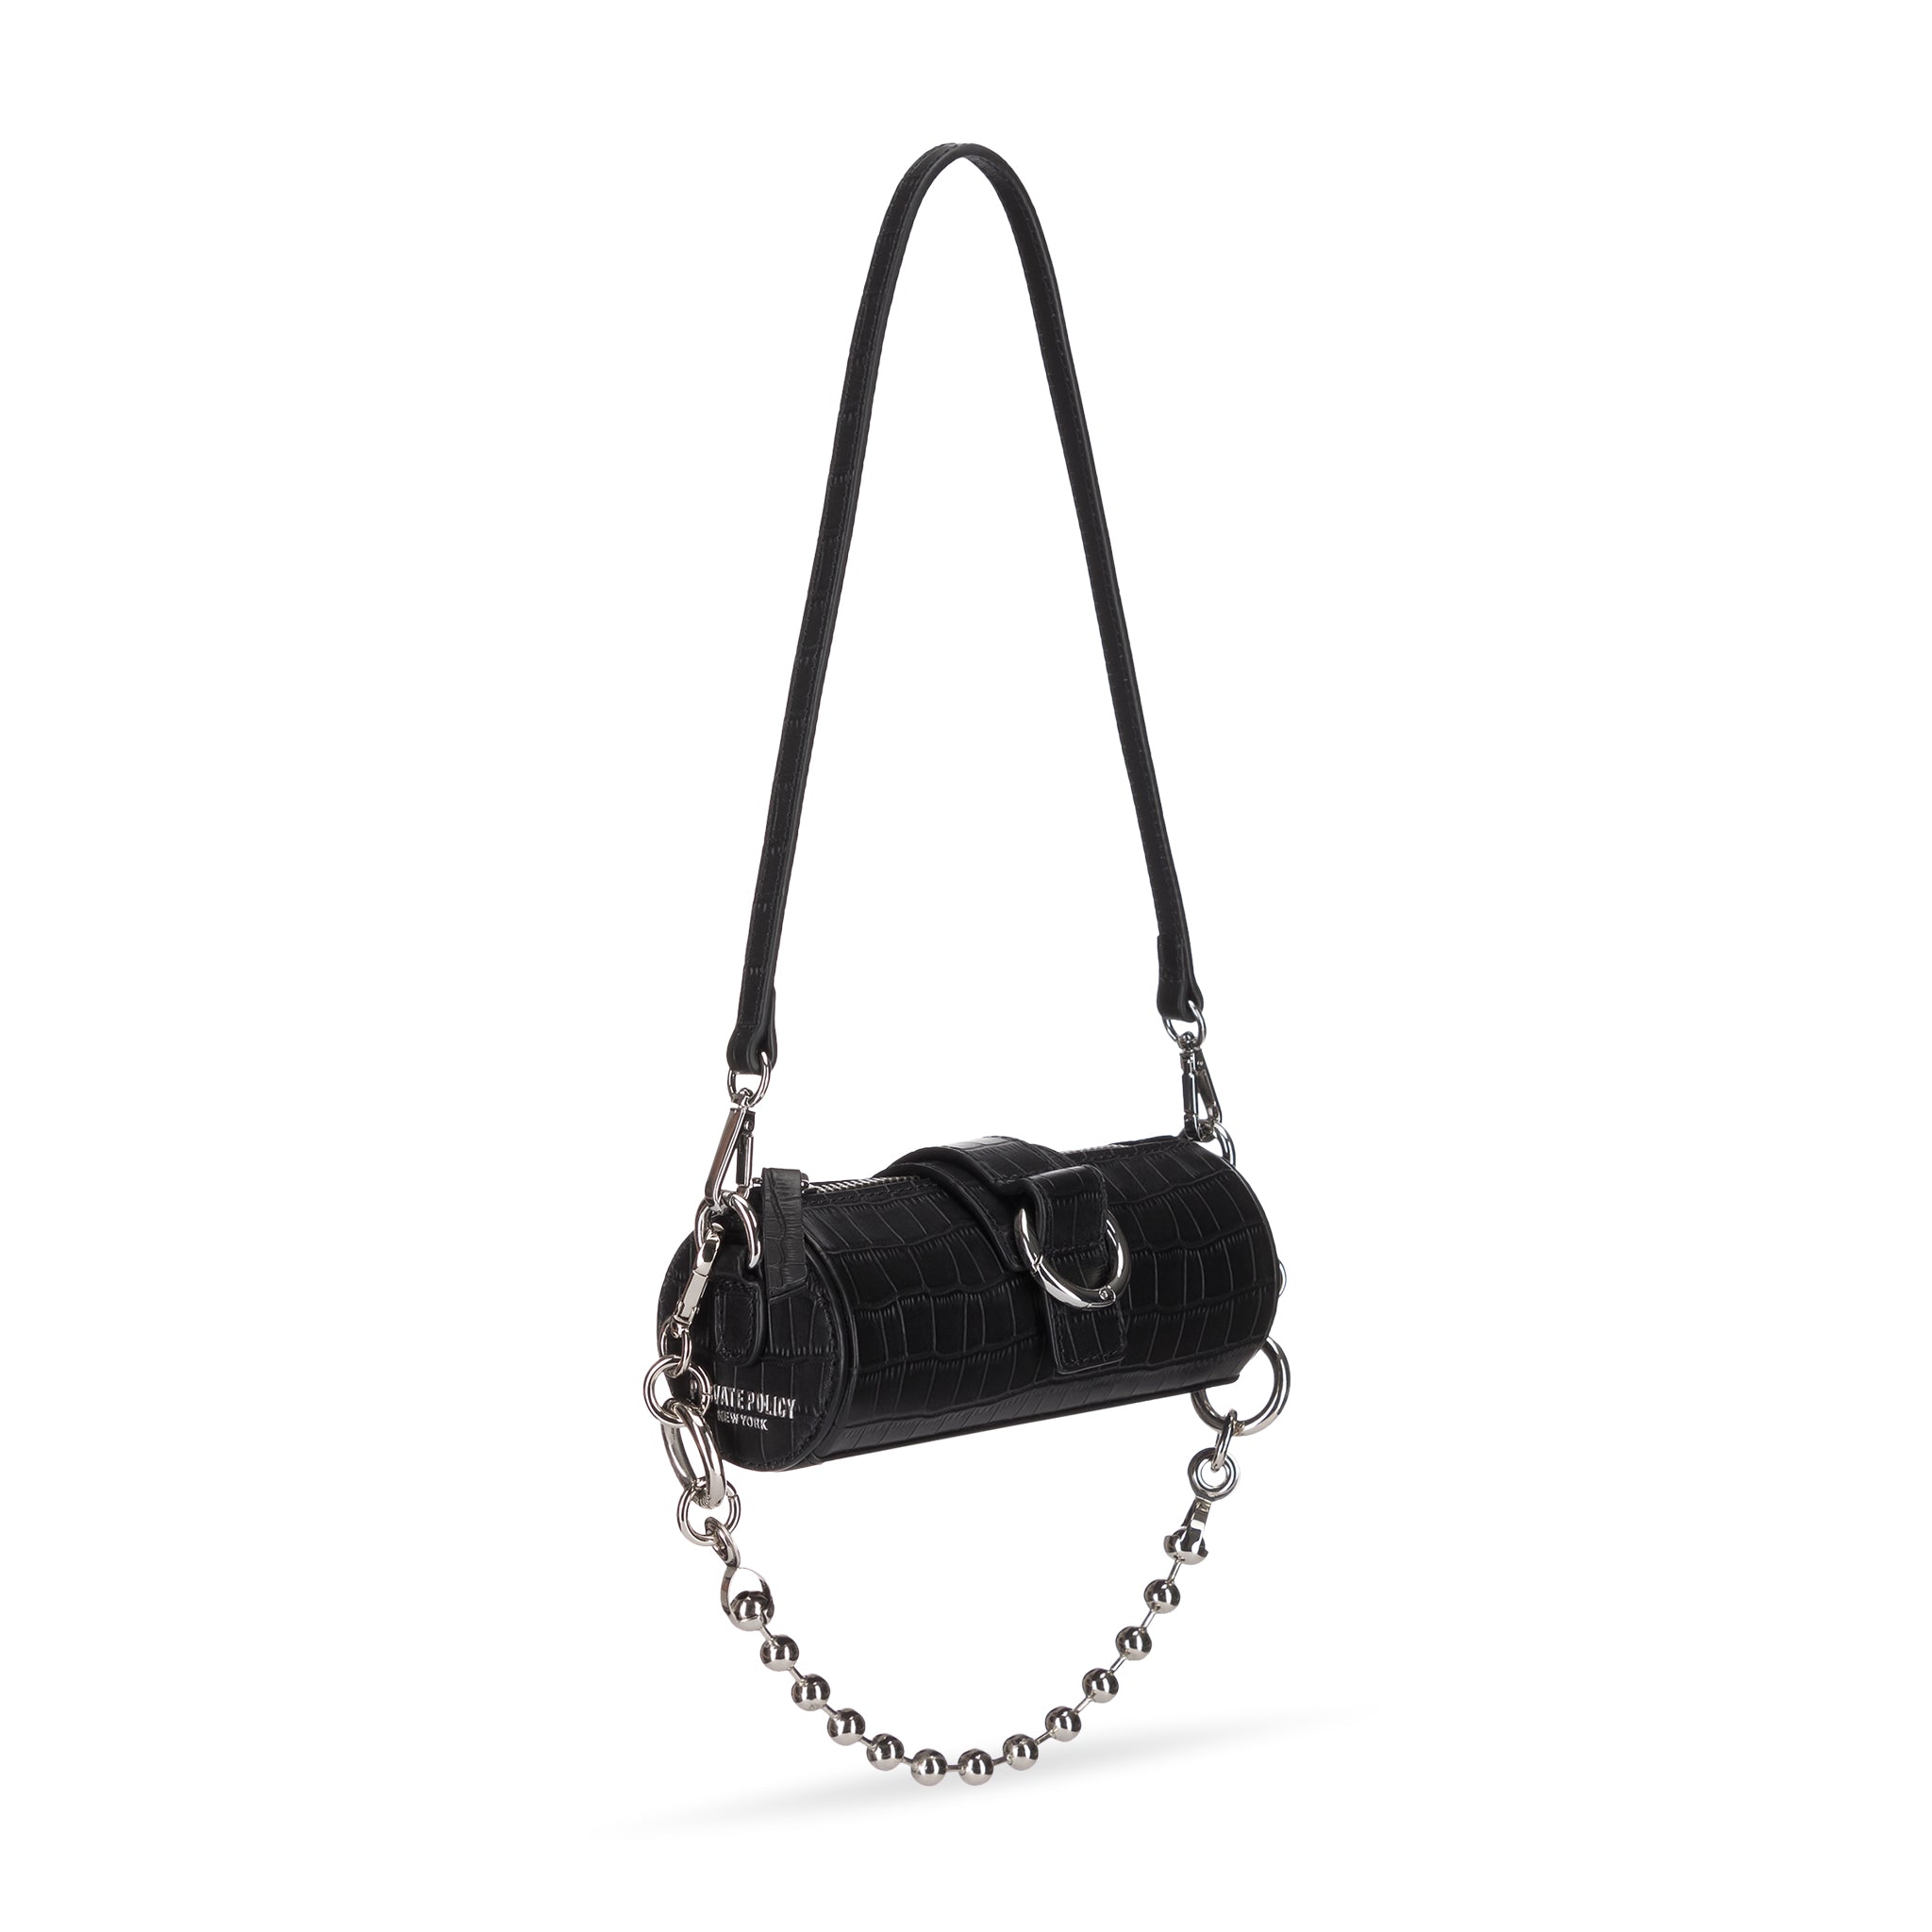 KENNETH COLE REACTION Black Barrel Style Shoulder Handbag Purse Bag | eBay